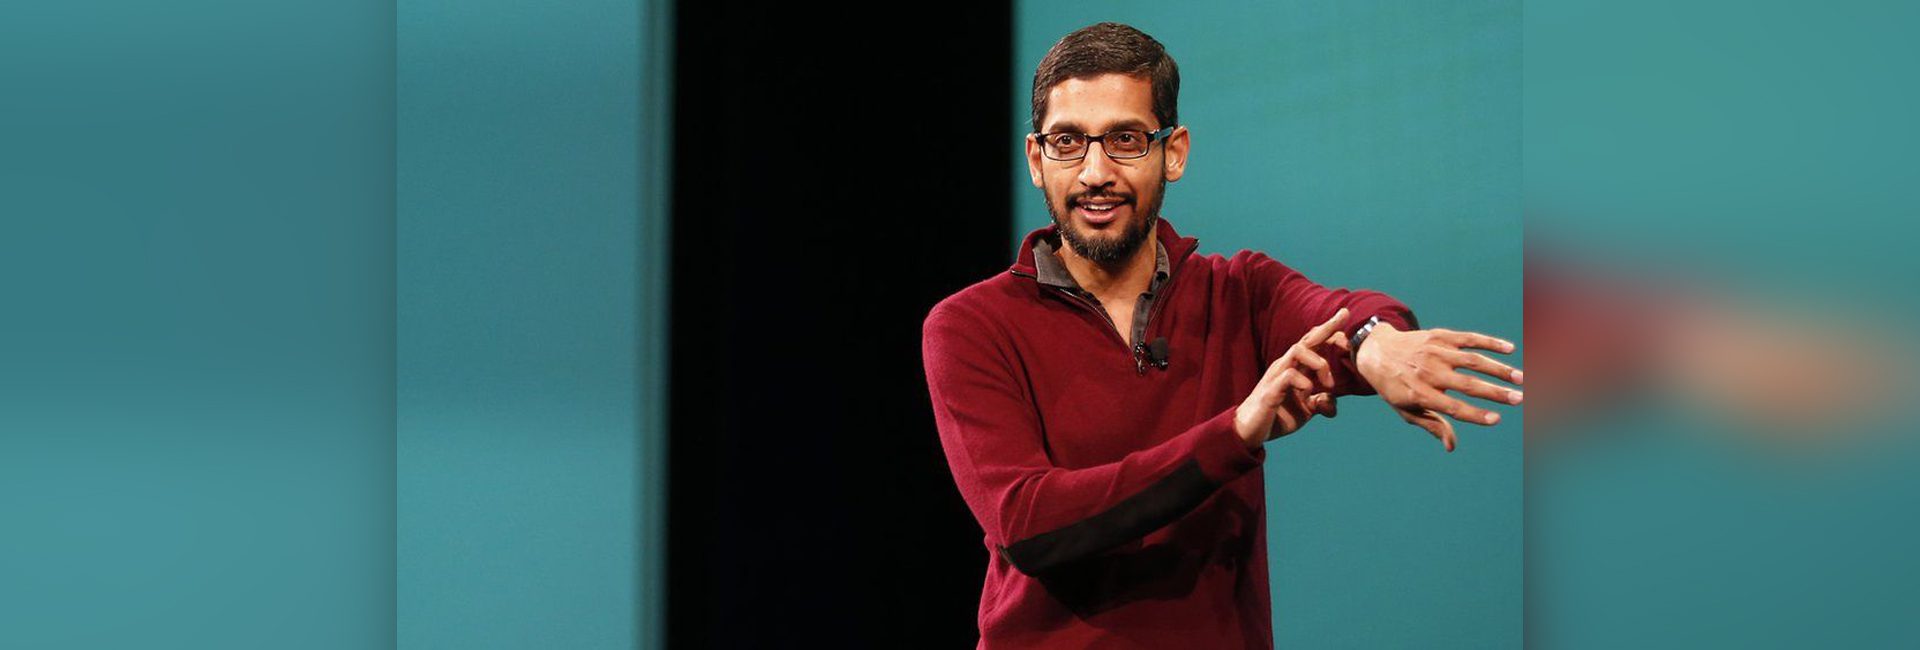 Giám đốc điều hành Google gốc Ấn Độ Sundar Pichai tiếp Padma Bhushan